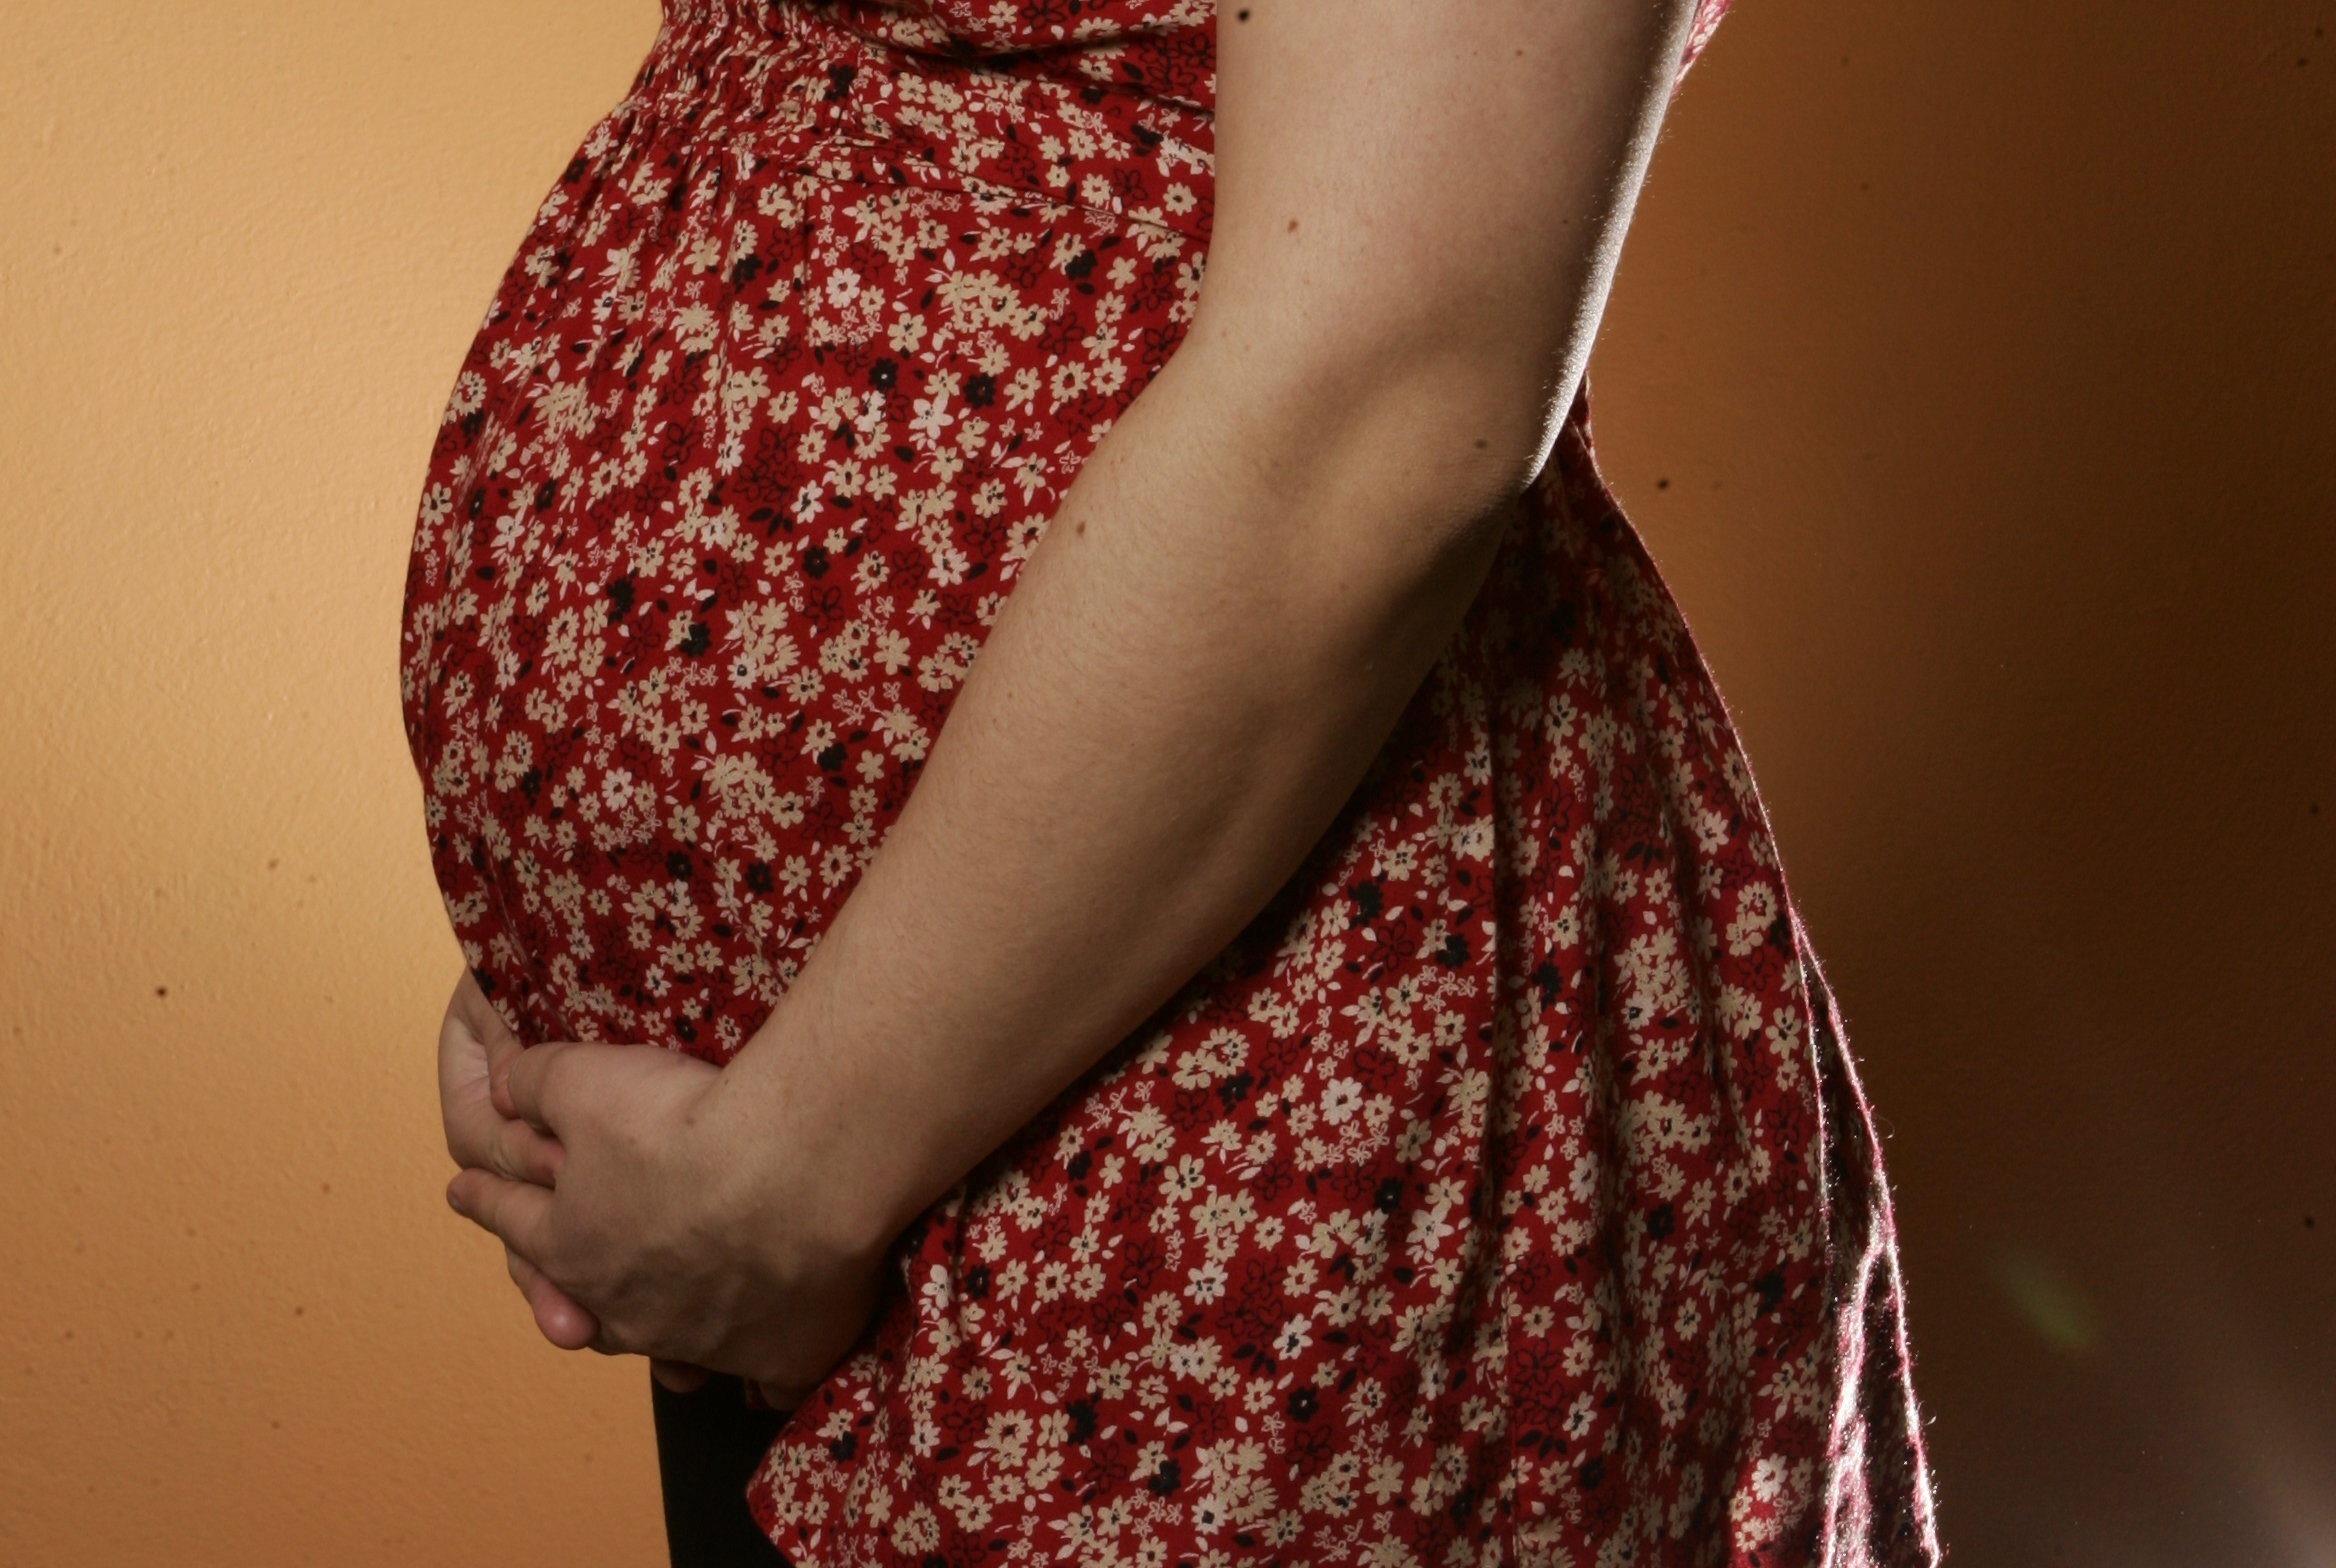 Defensoría del Pueblo urge implementar planes para disminuir casos de embarazo en menores de edad